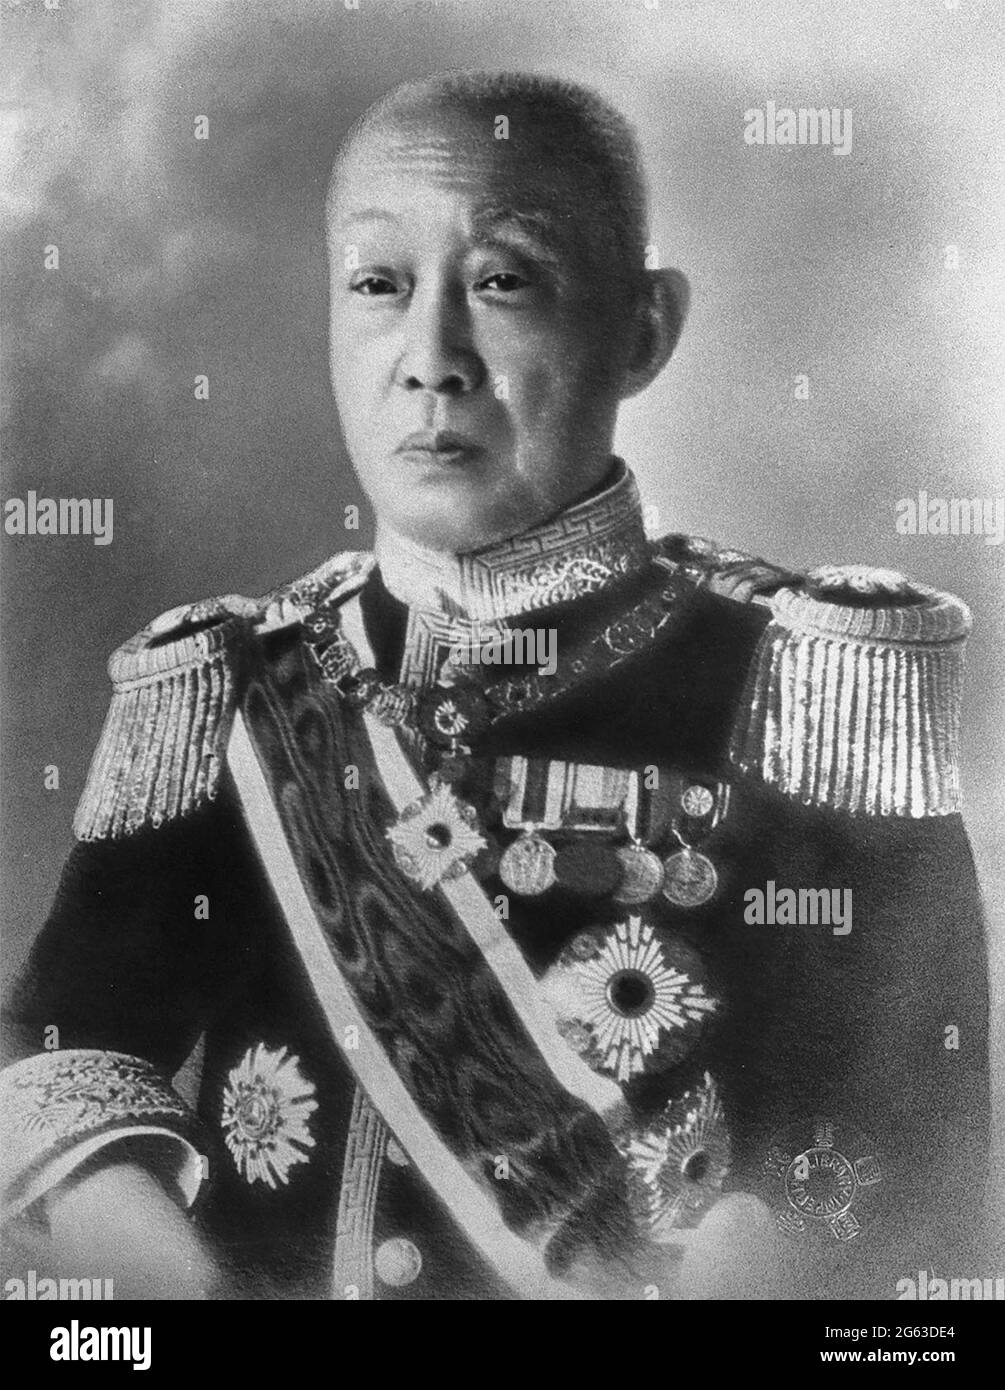 Porträt des Prinzen Saionji Kinmochi, eines japanischen Politikers, Staatsmannes und zweimal Premierministers von Japan. 1920 wurde er vom marquis zum Prinzen erhoben. Als letztes überlebendes Mitglied der japanischen genrō war er von Mitte der 1920er bis Anfang der 1930er Jahre die einflussreichste Stimme in der japanischen Politik. Stockfoto